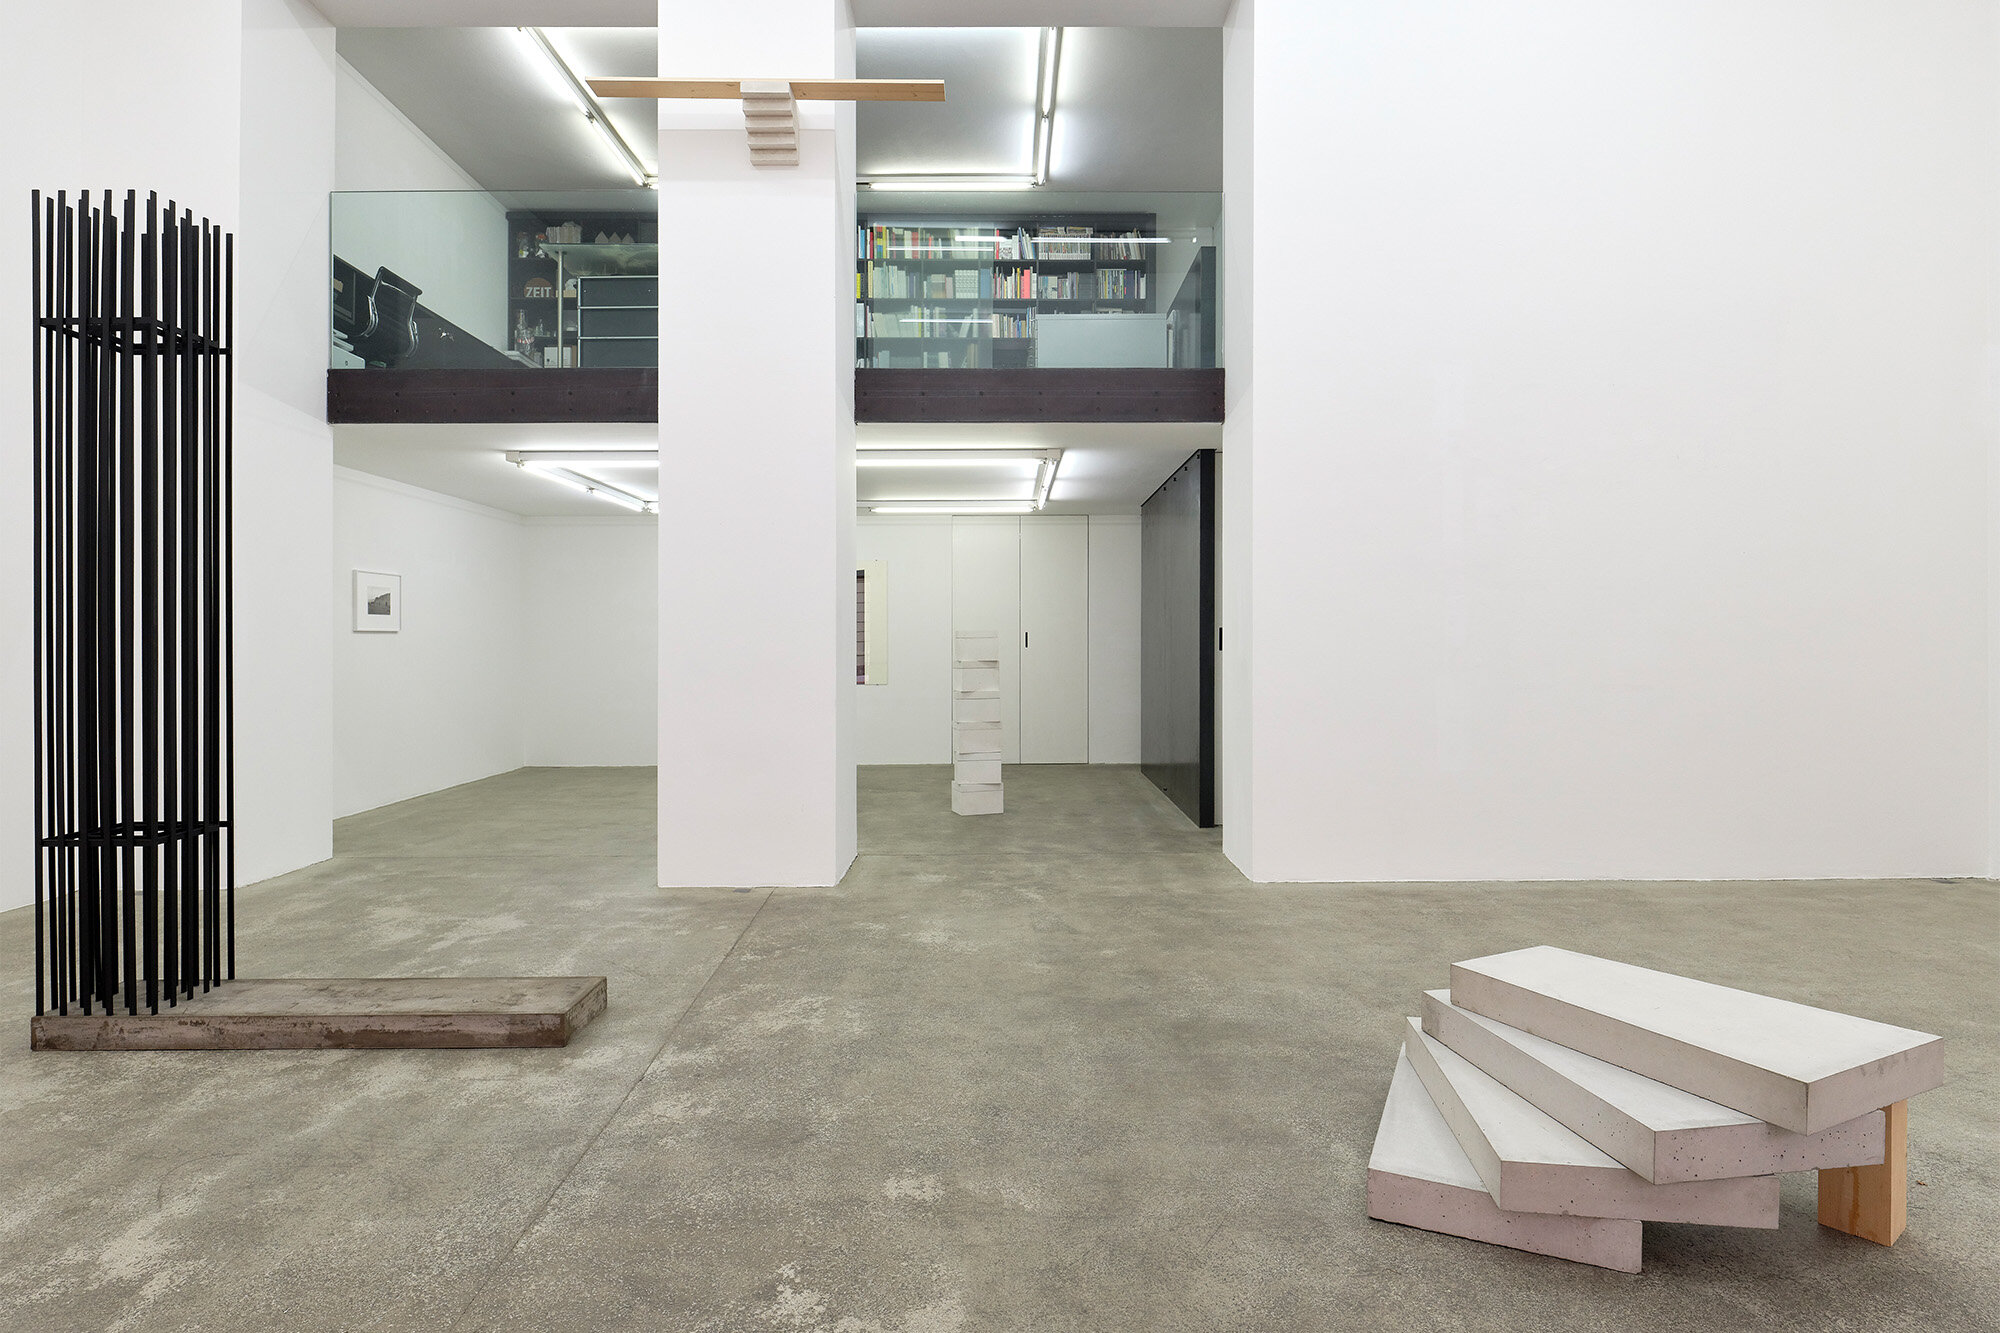 Galerie+Johann+Widauer-Exhibition-2020-Hubert-Kiecol-02.jpg